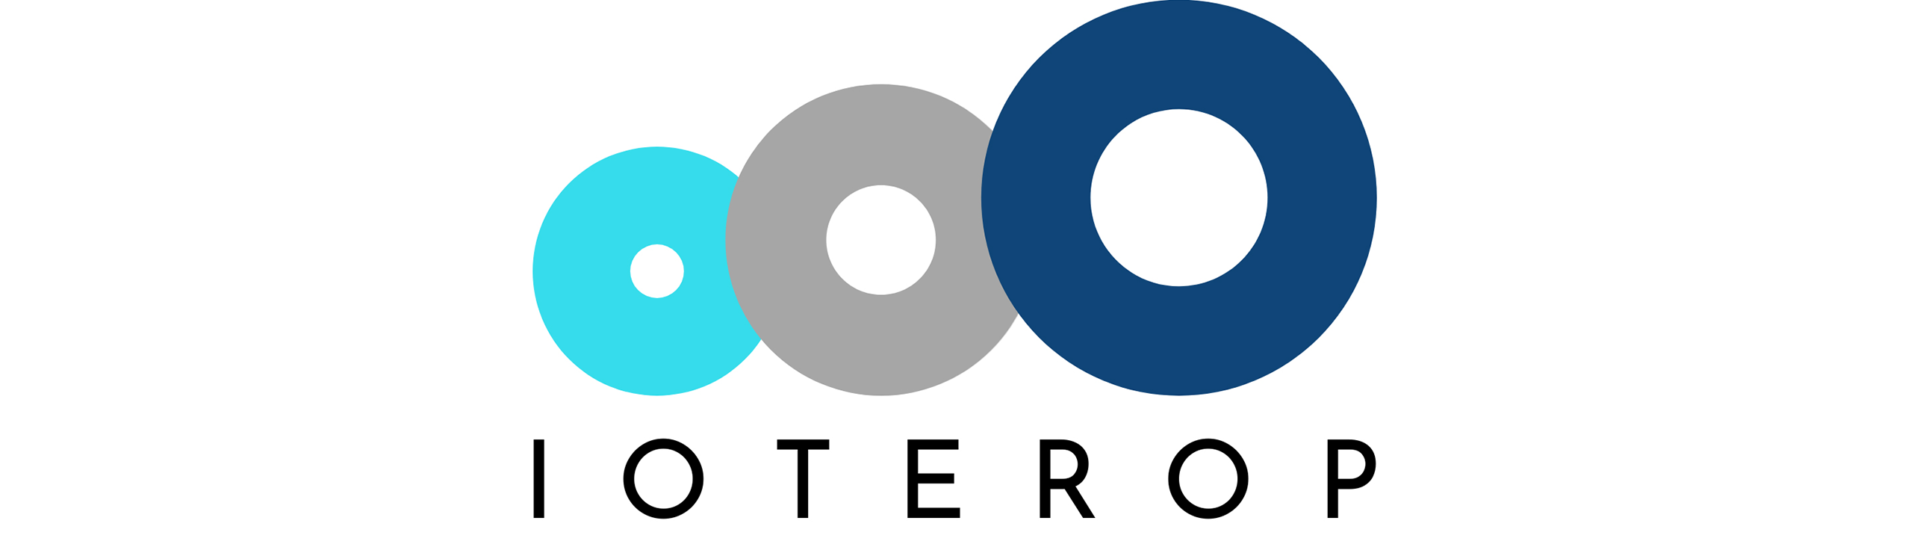 Logo_ioterop